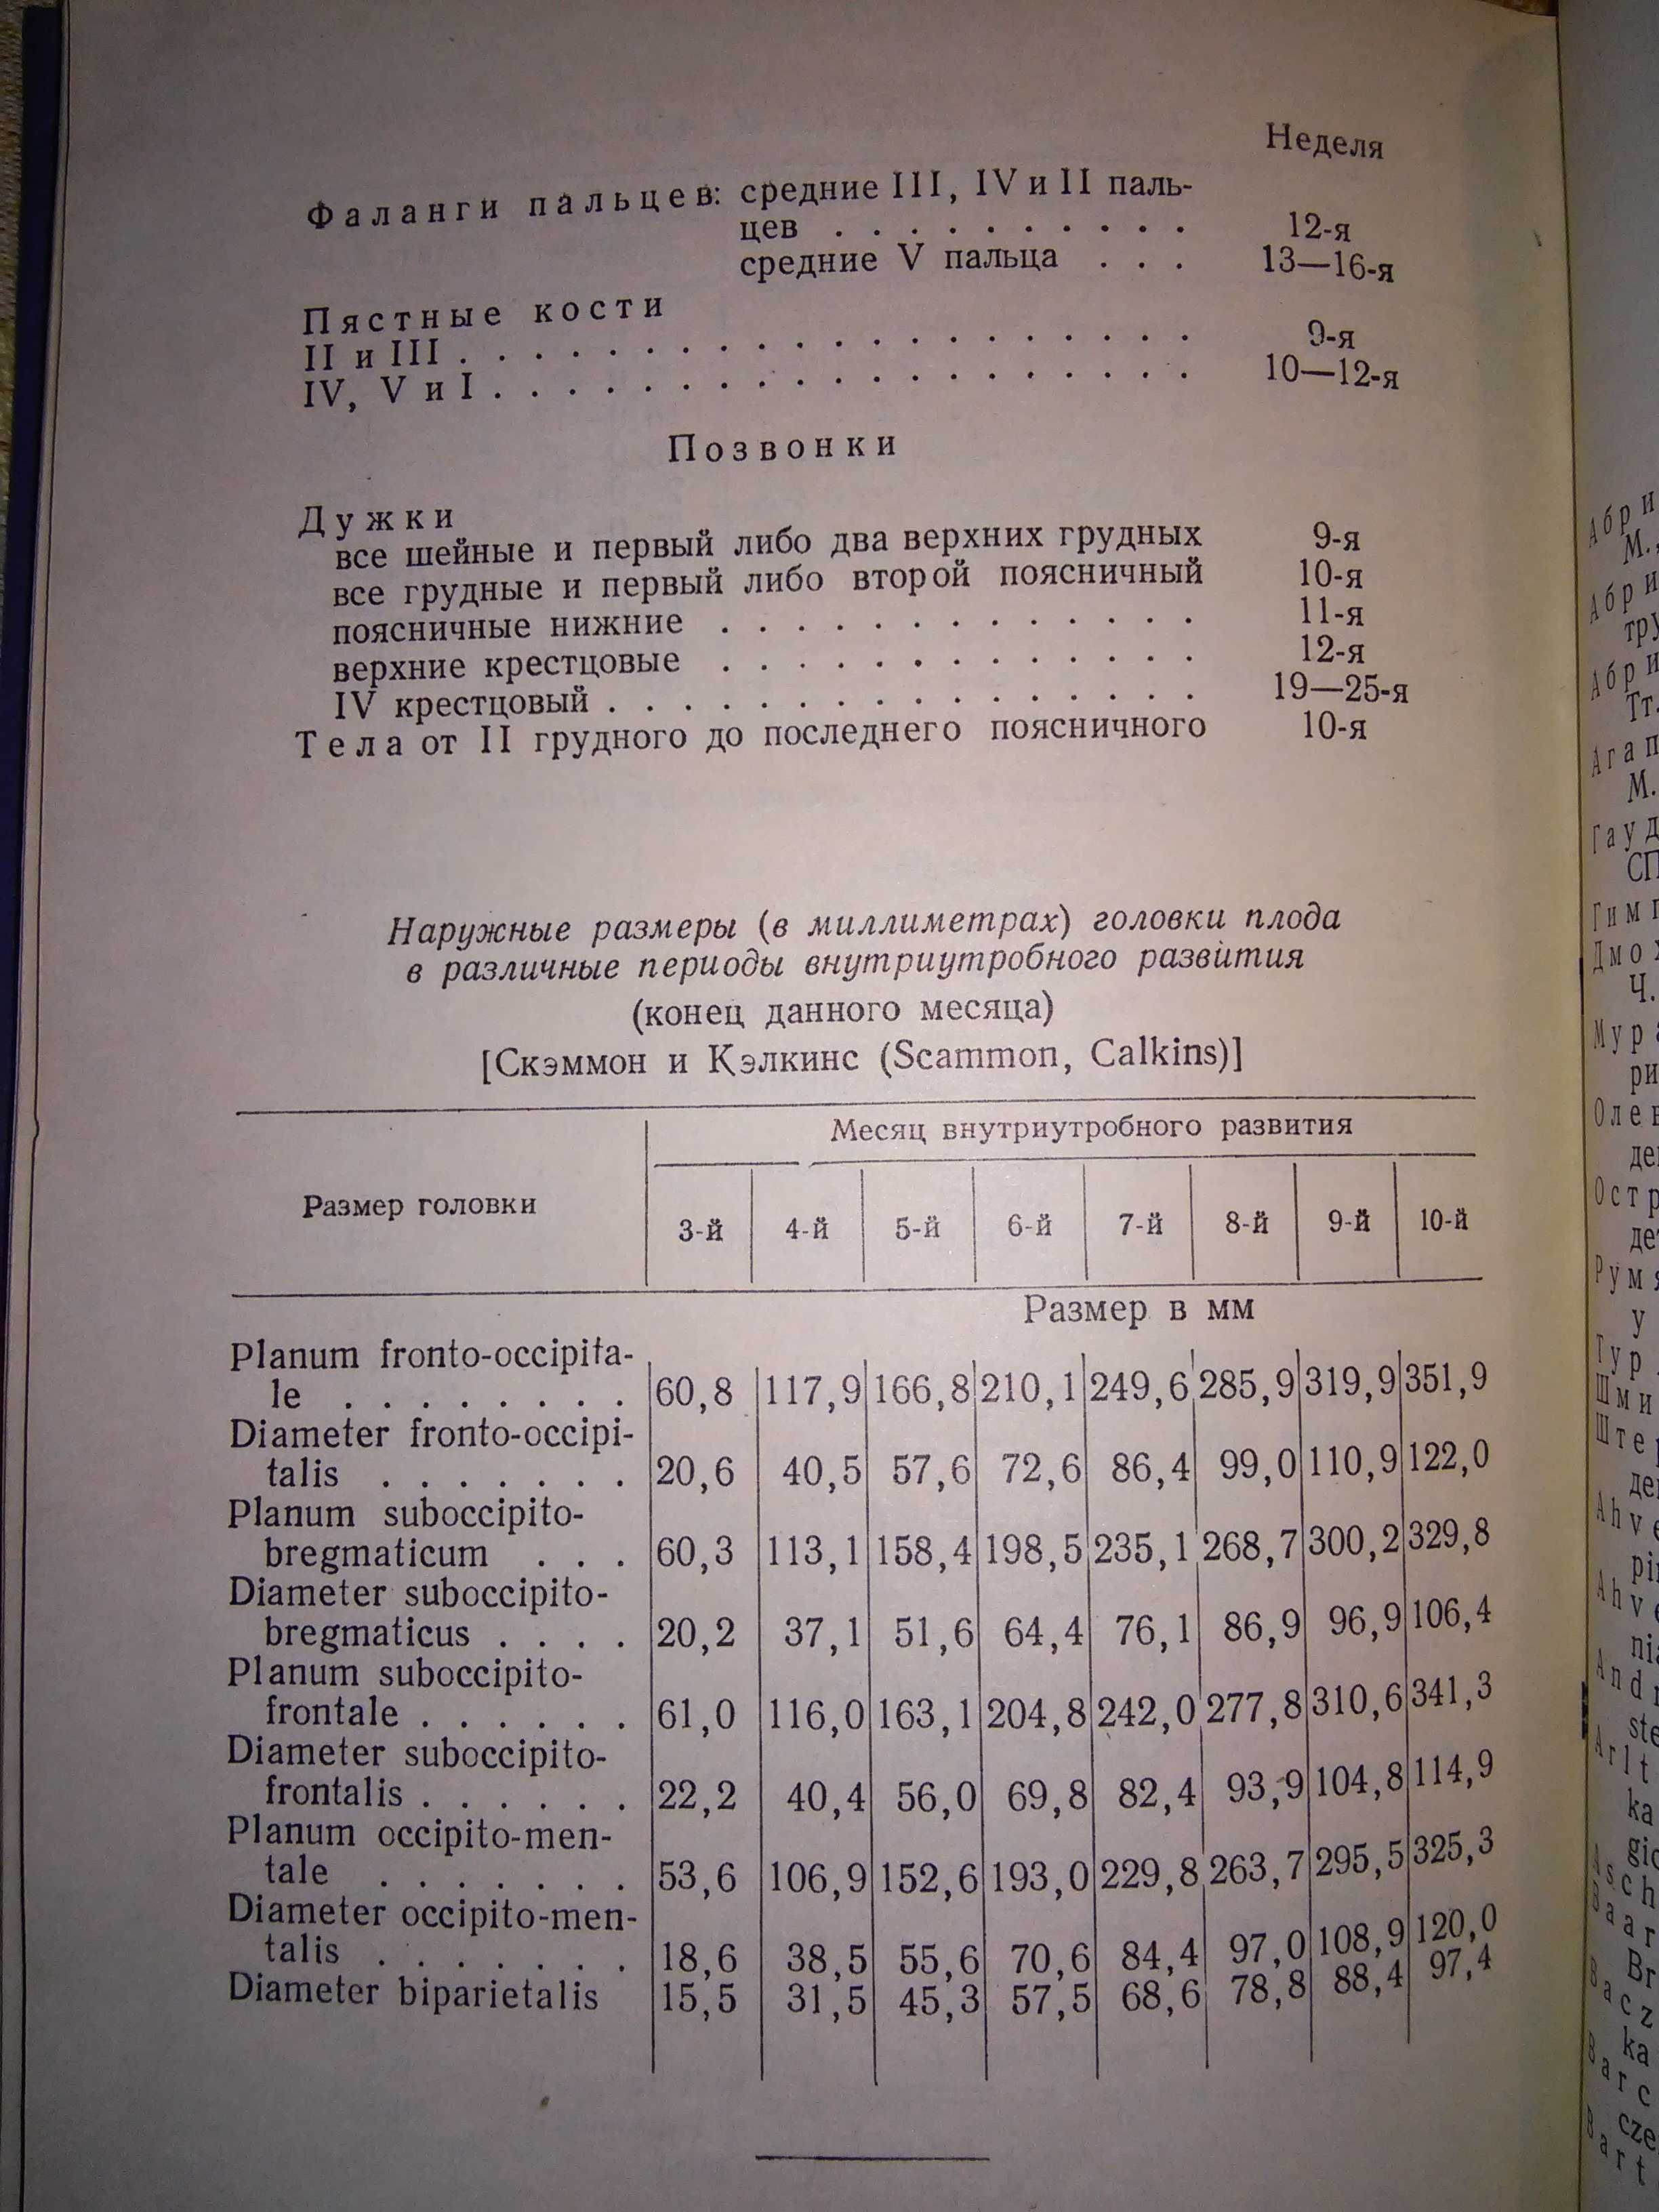 Хрущелевски Секция трупов плодов и новорожденных 1962 р.